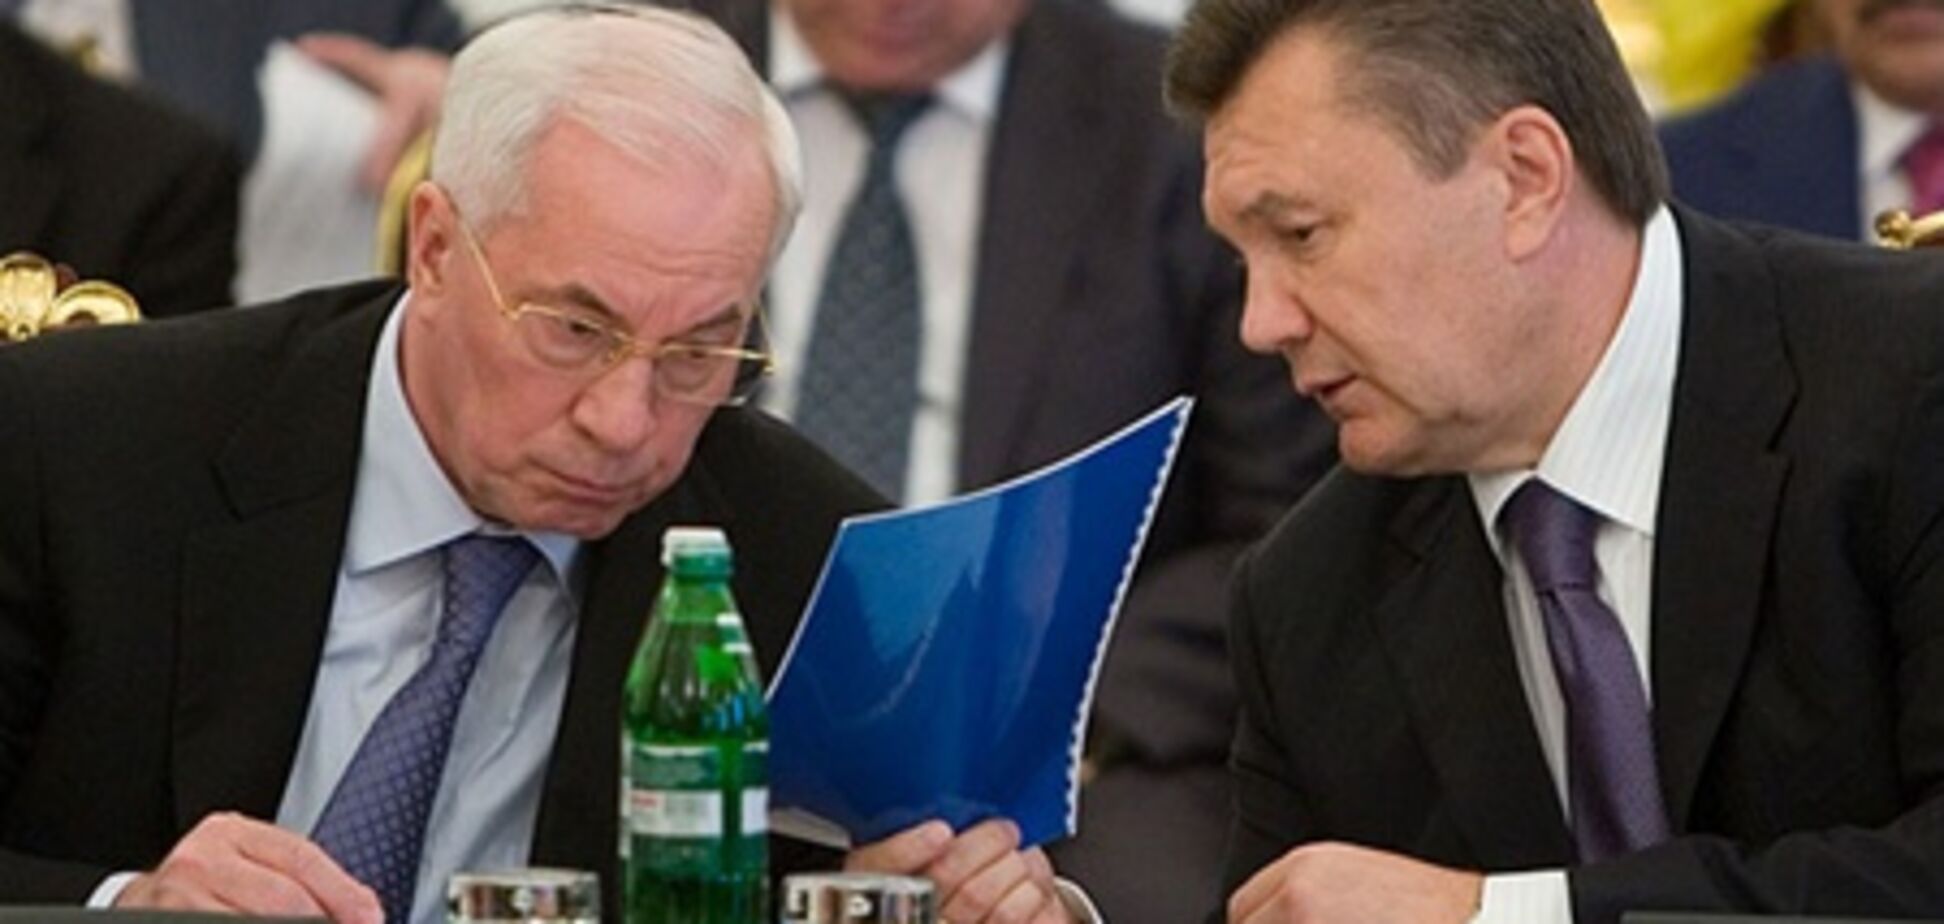 ПР: Янукович и Азаров сделали больше, чем прошлая власть за 5 лет